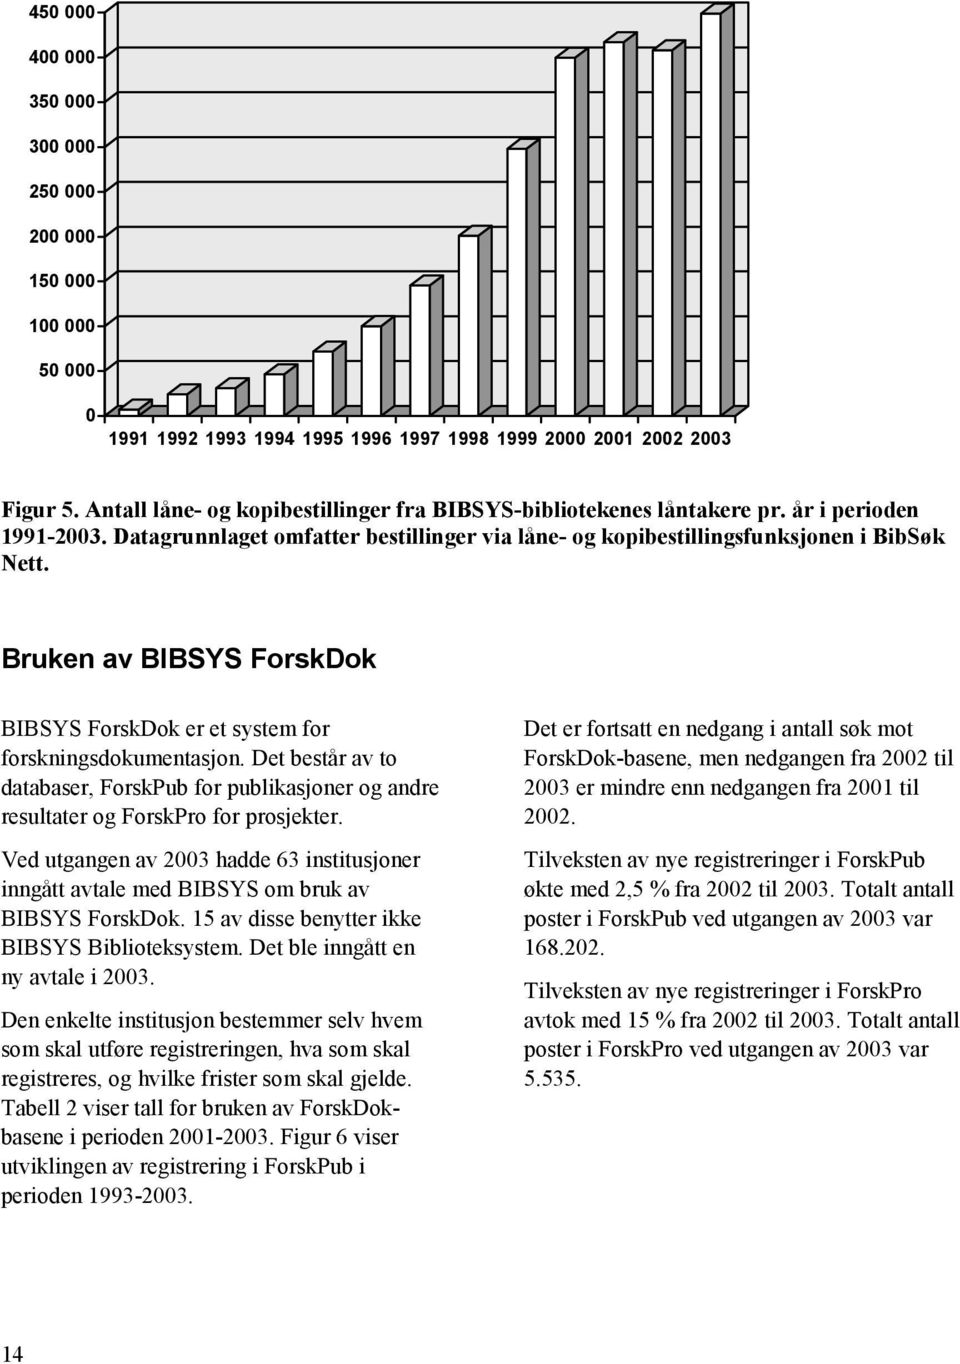 Bruken av BIBSYS ForskDok BIBSYS ForskDok er et system for forskningsdokumentasjon. Det består av to databaser, ForskPub for publikasjoner og andre resultater og ForskPro for prosjekter.